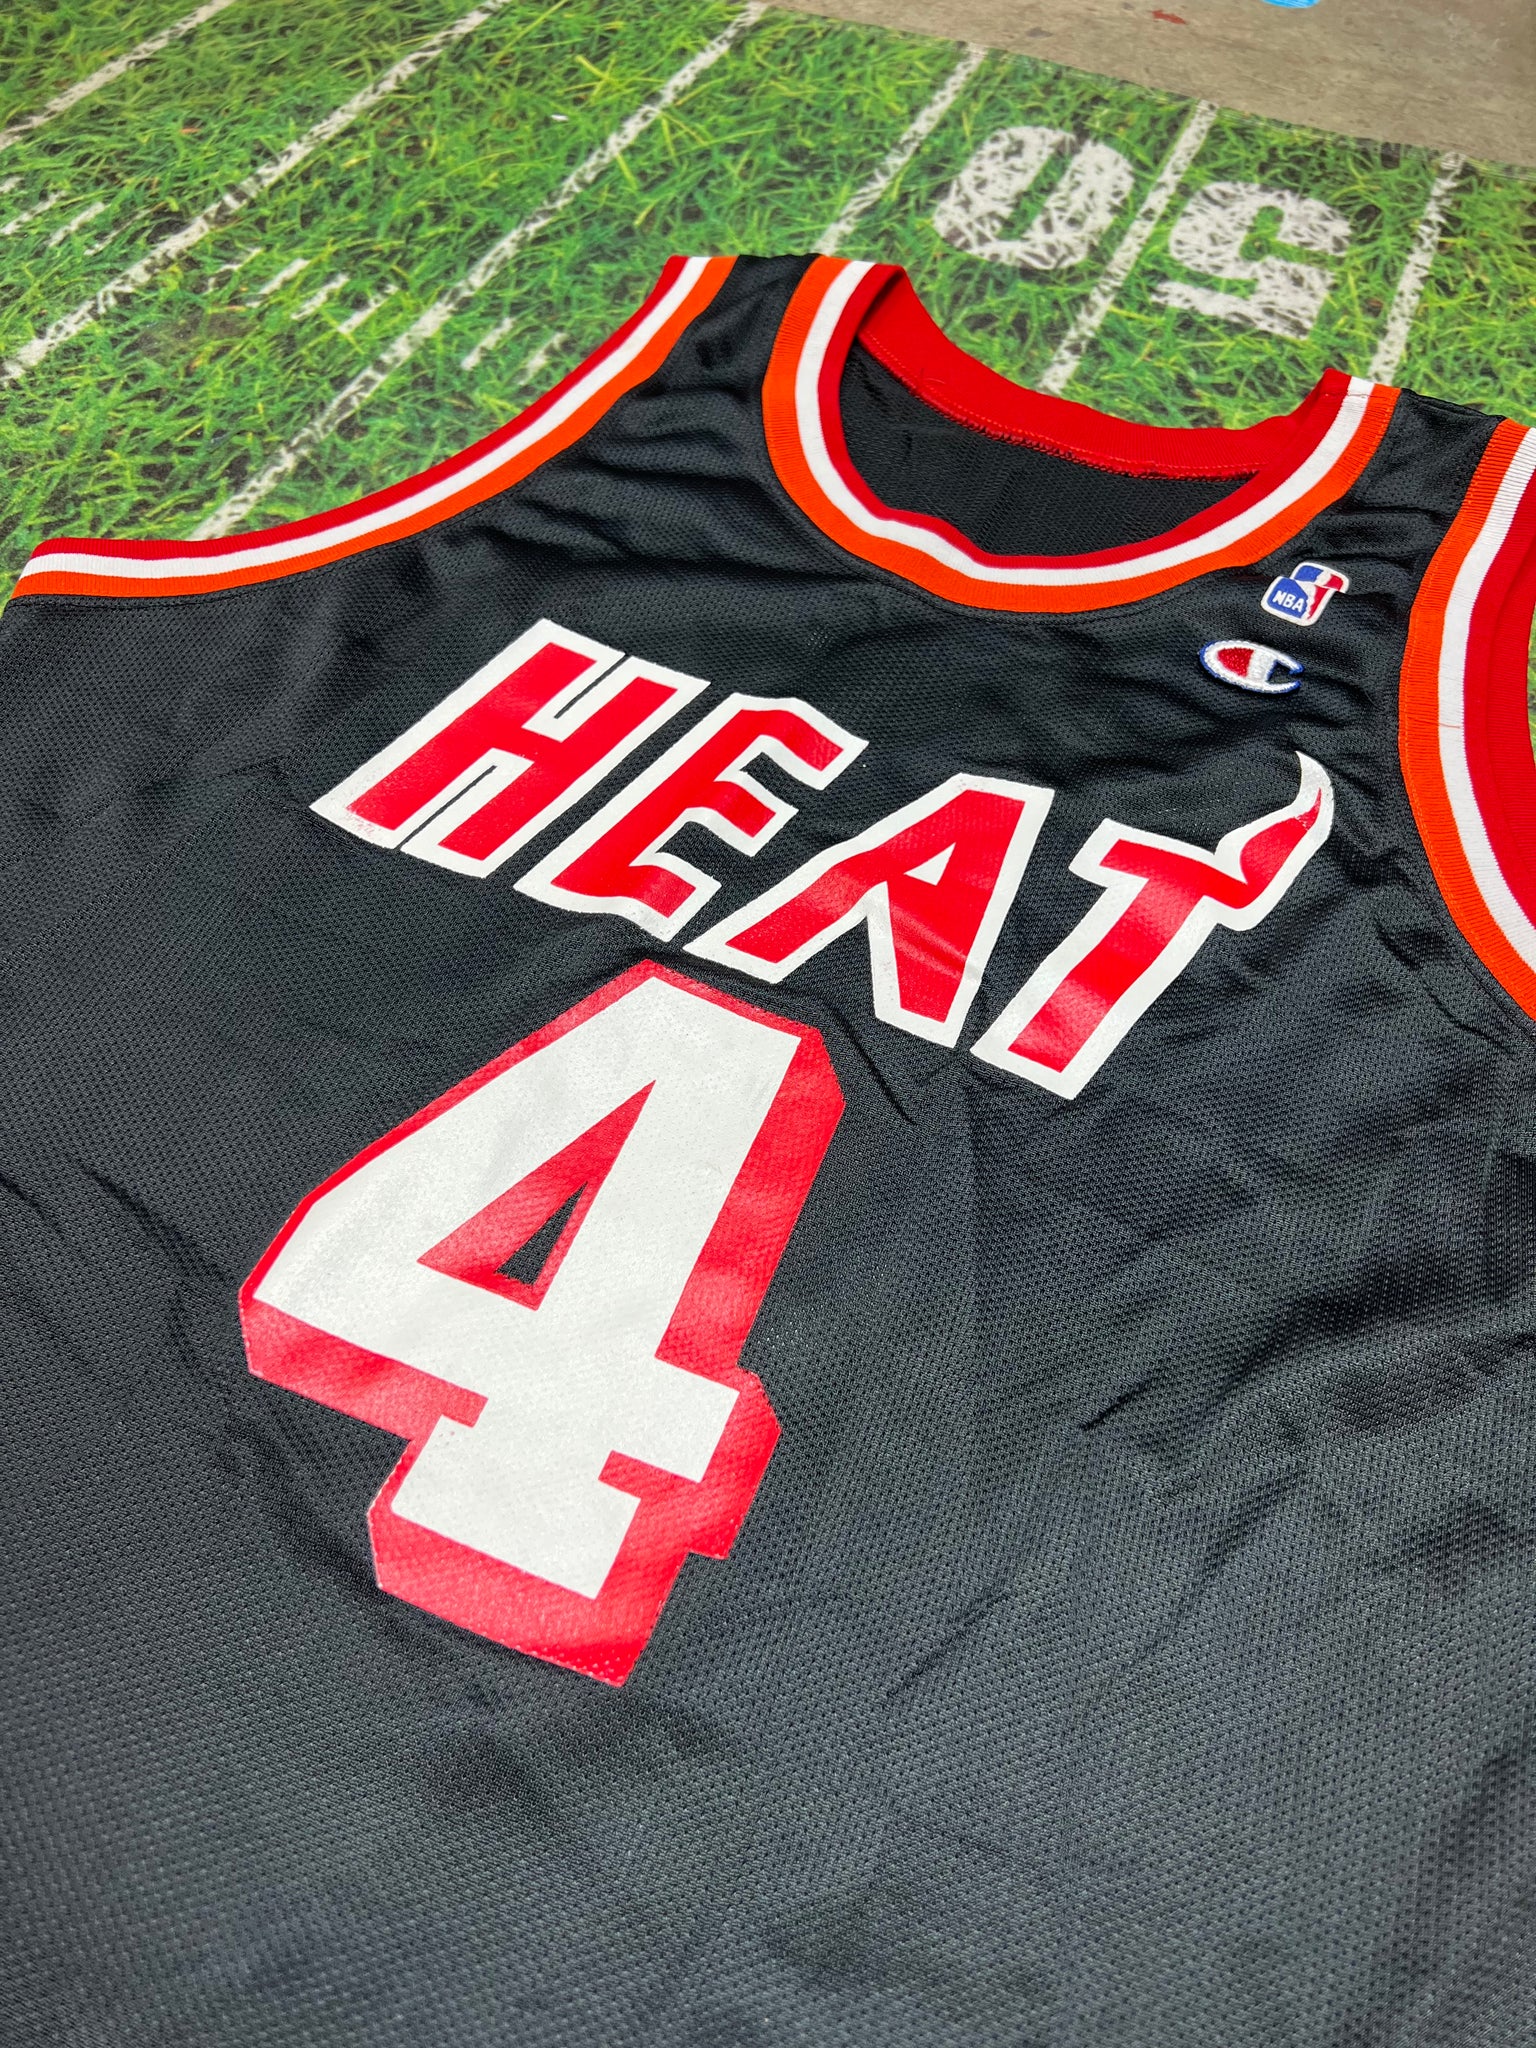 Vintage Rony Seikaly Miami Heat NBA Champion basketball jersey 44 –  Rare_Wear_Attire